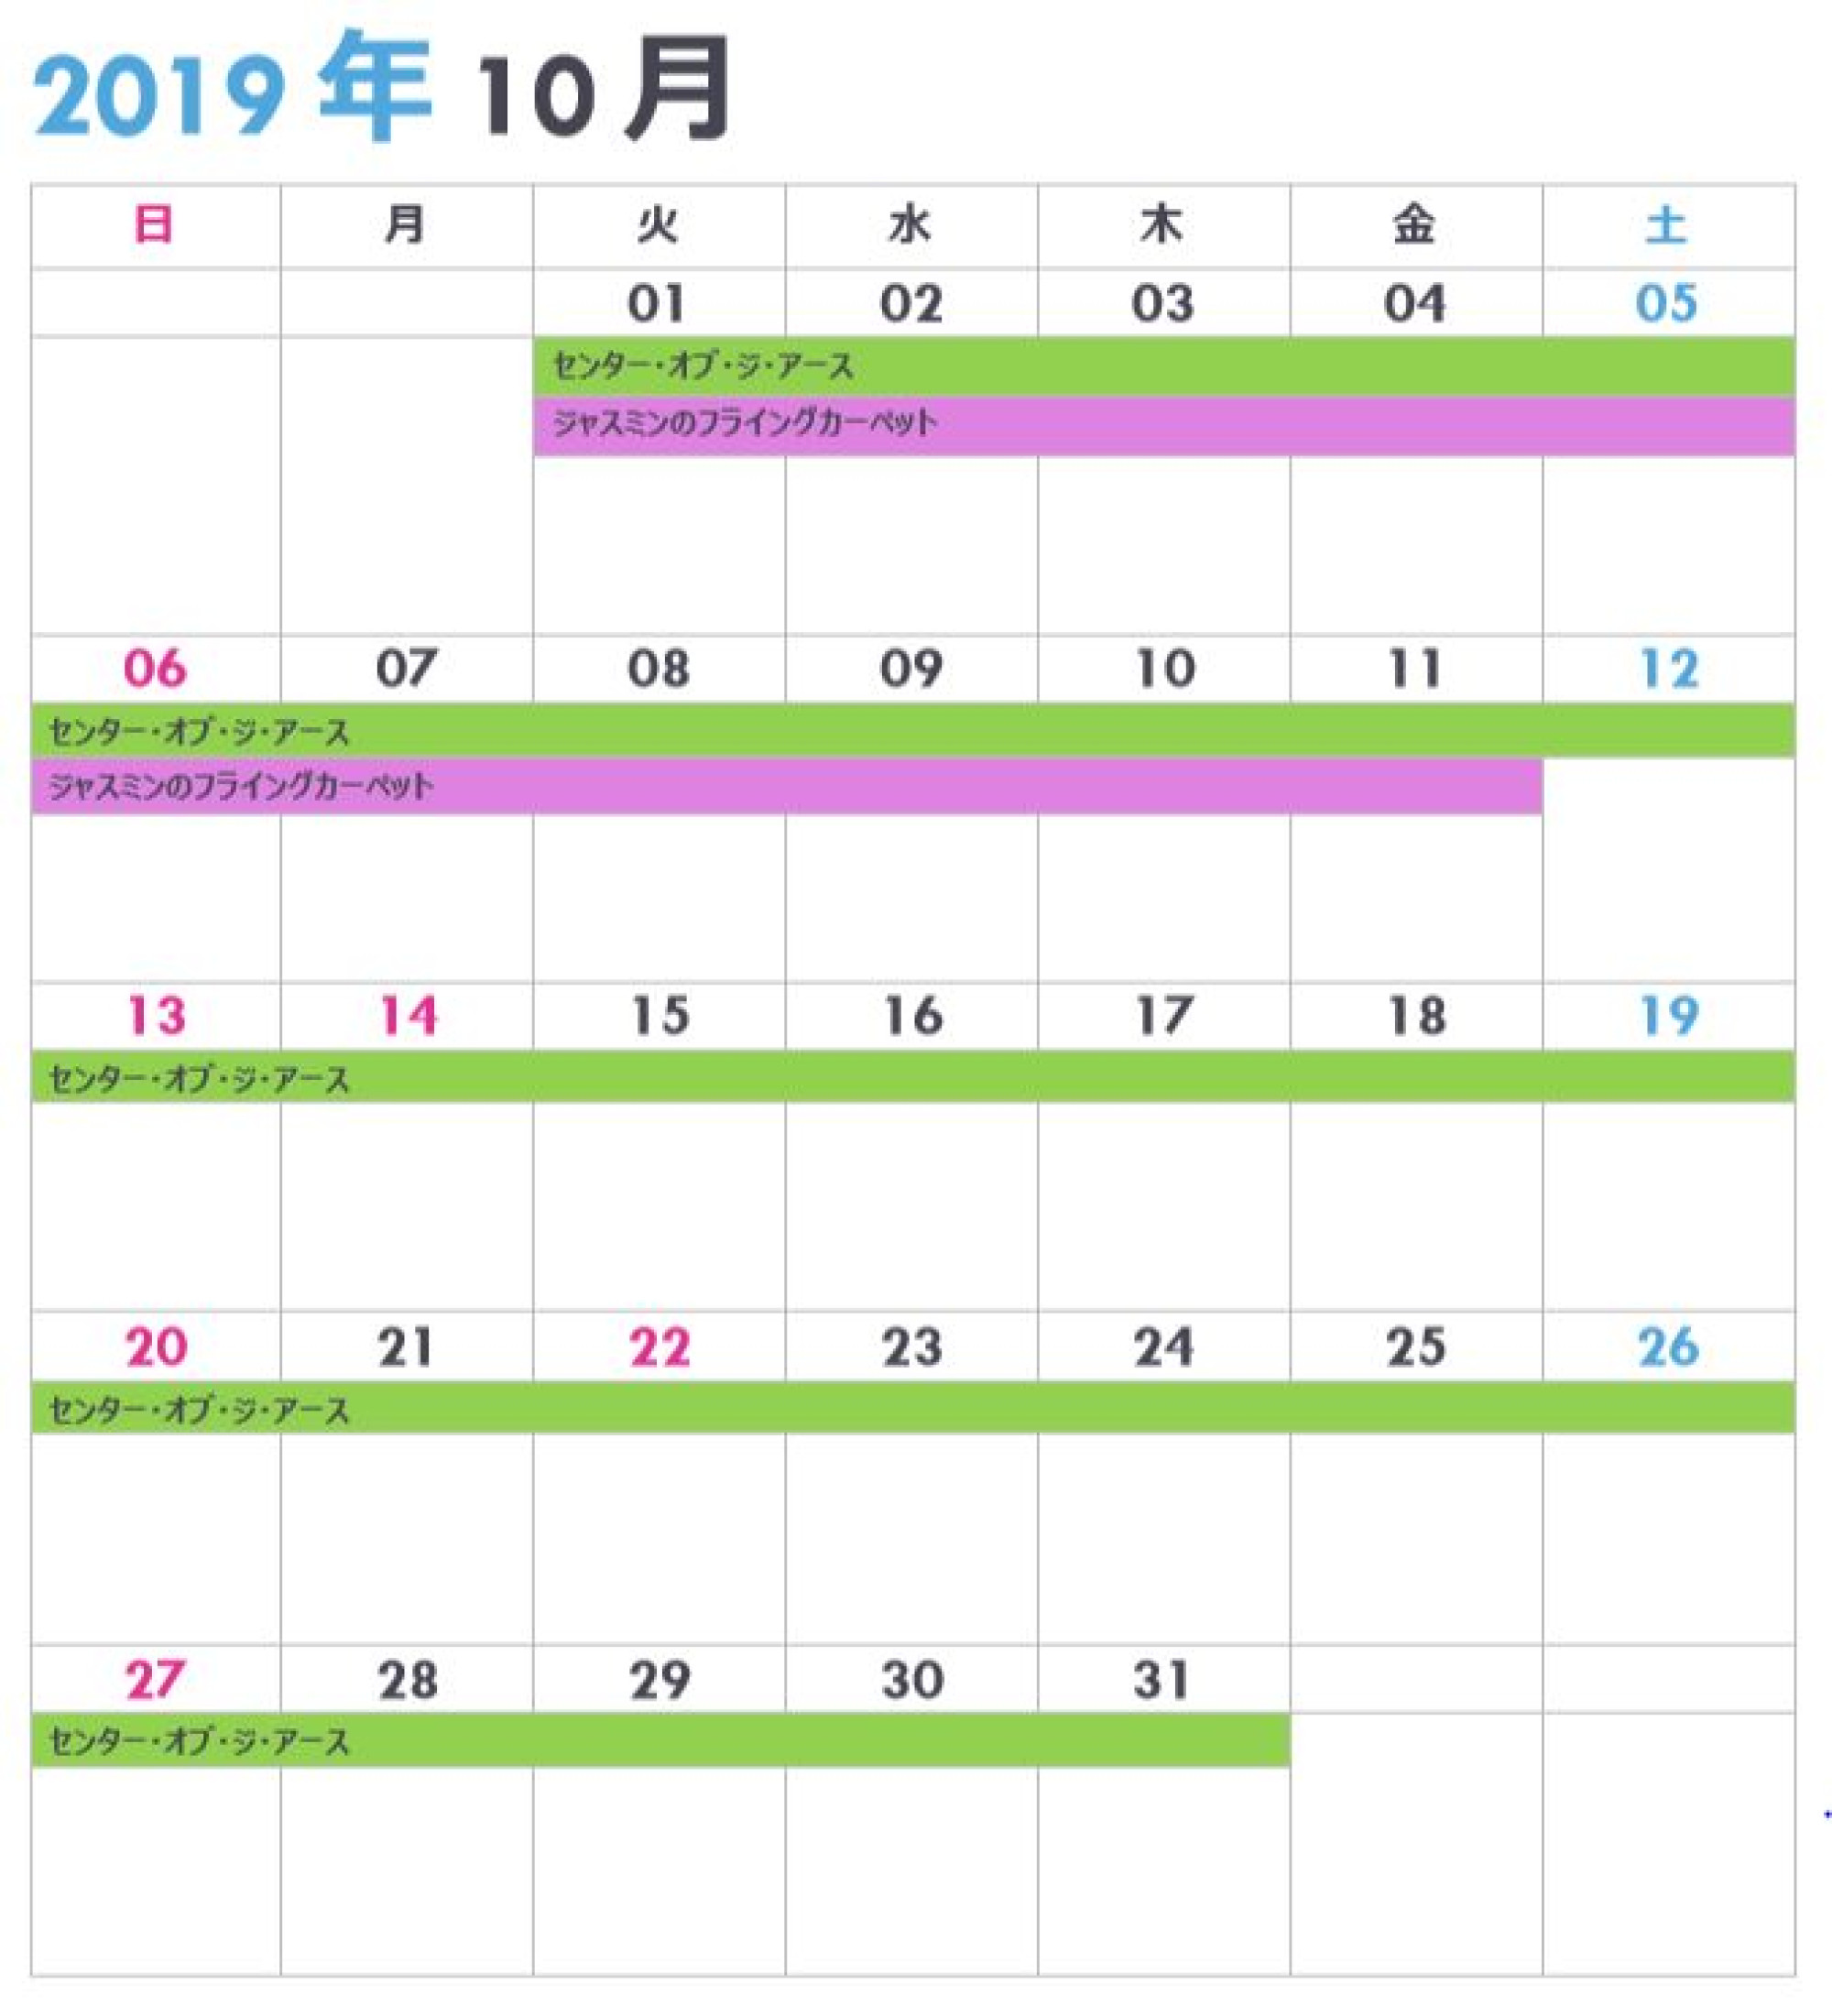 東京ディズニーシーの休止 リハブカレンダー 19年10月 キャステル Castel ディズニー情報